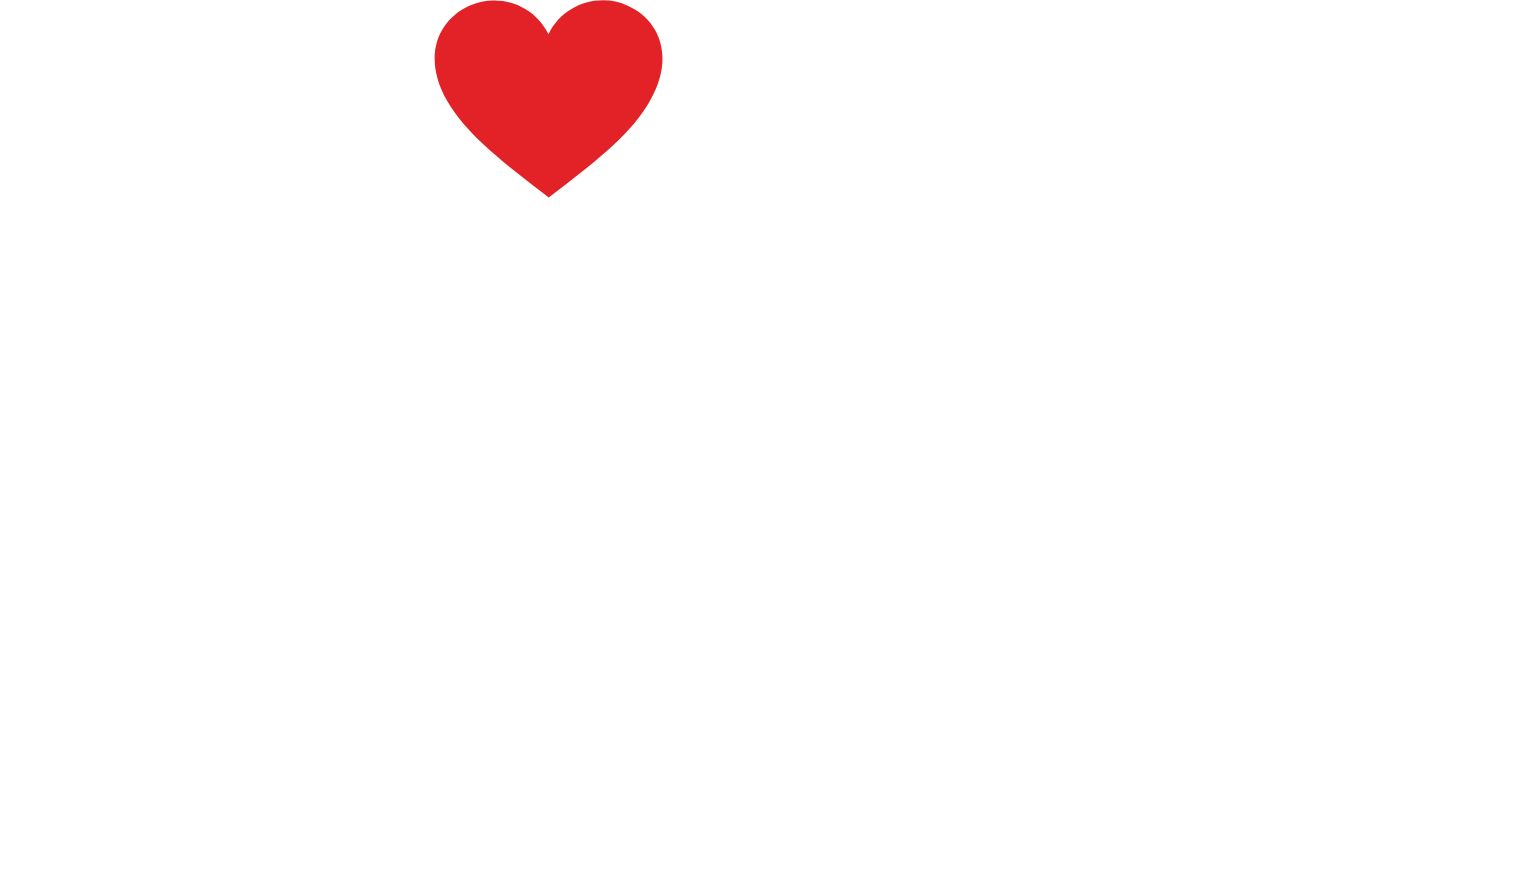 General Mills logo large for dark backgrounds (transparent PNG)